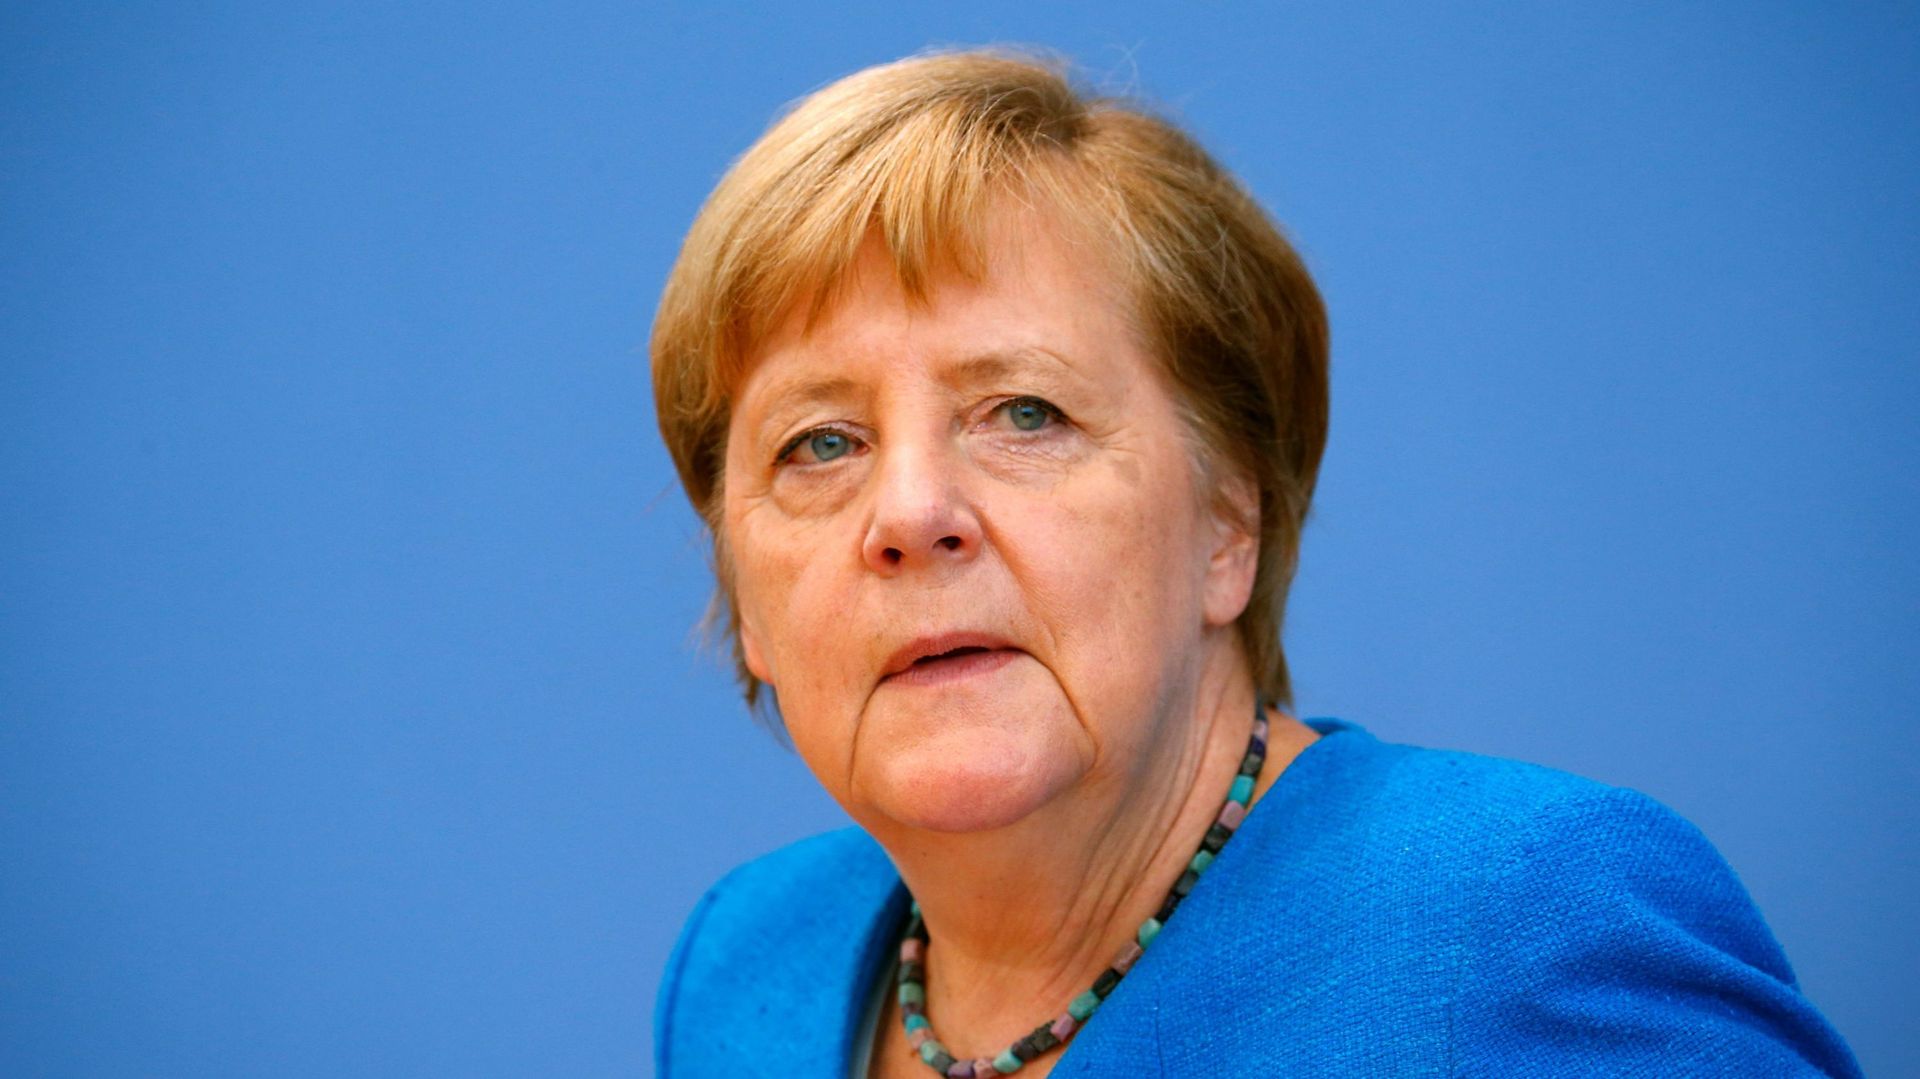 Cinq ans après, Angela Merkel défend sa politique migratoire : "Je prendrais les mêmes décisions essentielles"